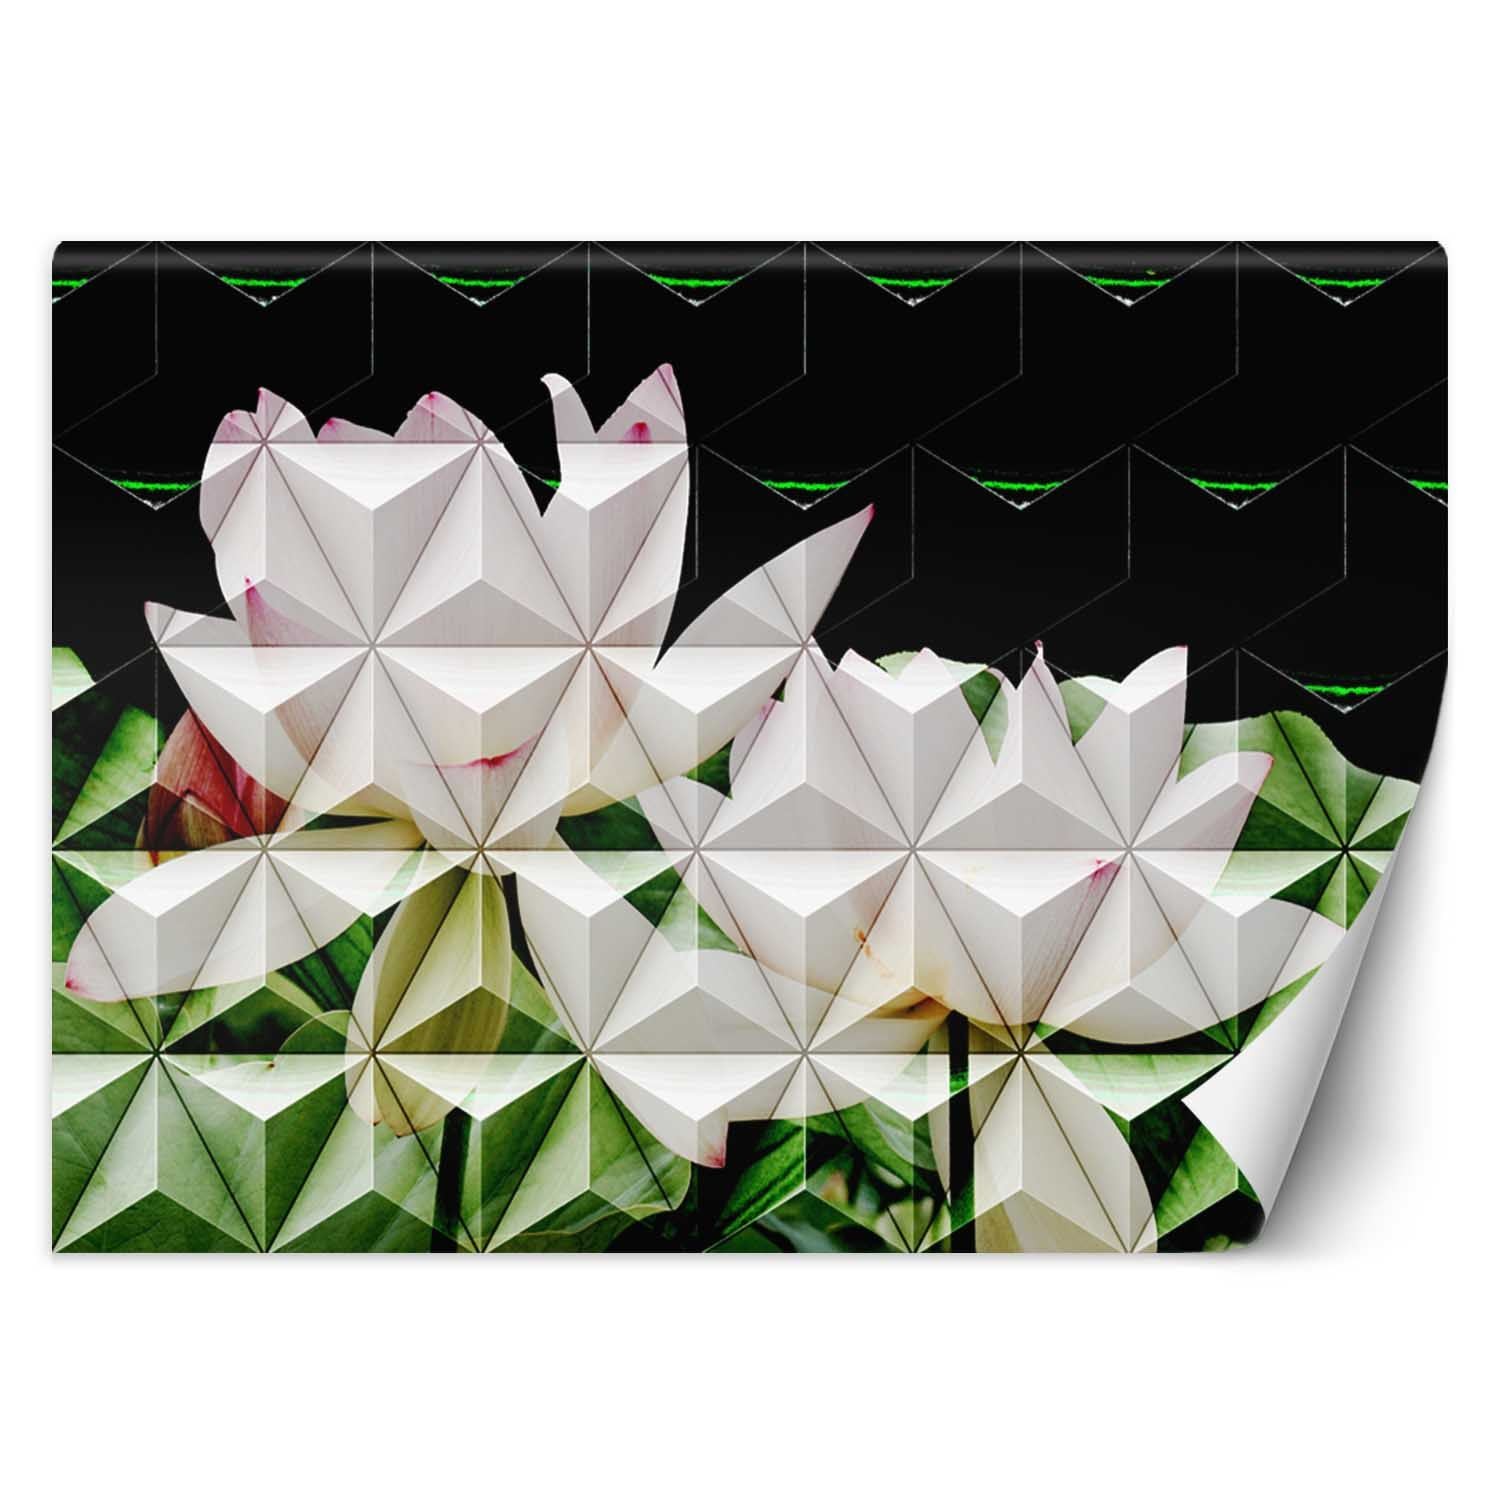 Trend24 – Behang – Geometrische Lotusbloem – Behangpapier – Behang Woonkamer – Fotobehang – 200x140x2 cm – Incl. behanglijm